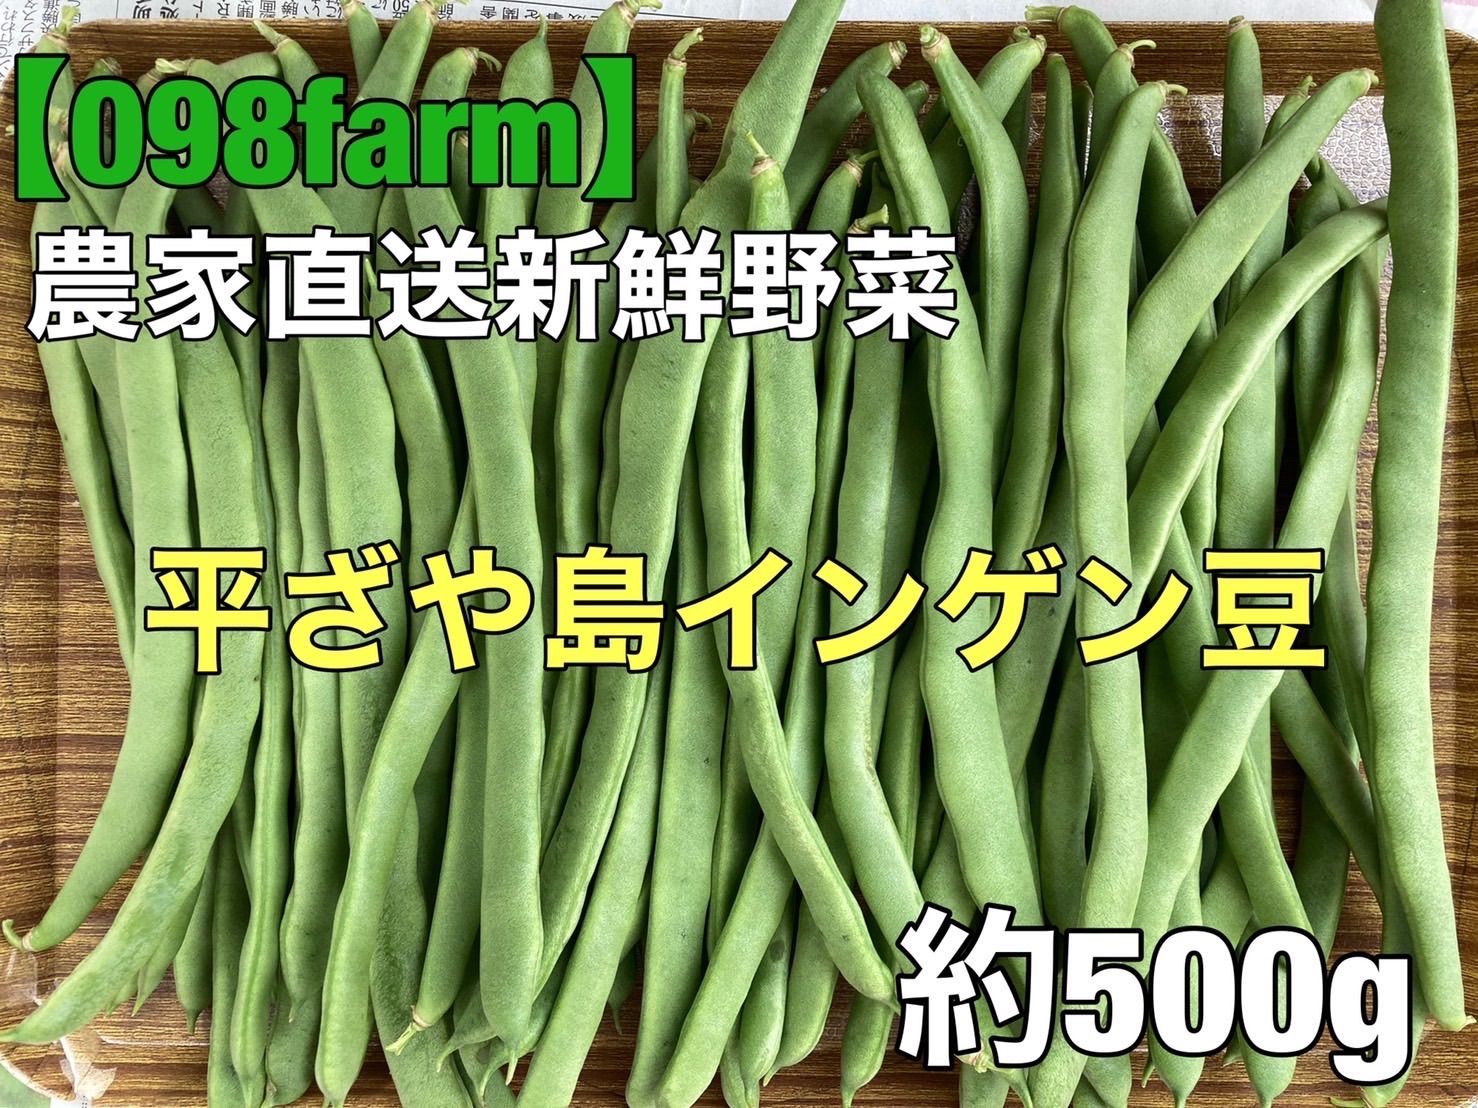 メルカリShops - 沖縄産 島インゲン豆 平ざやインゲン豆 500g 採れたて